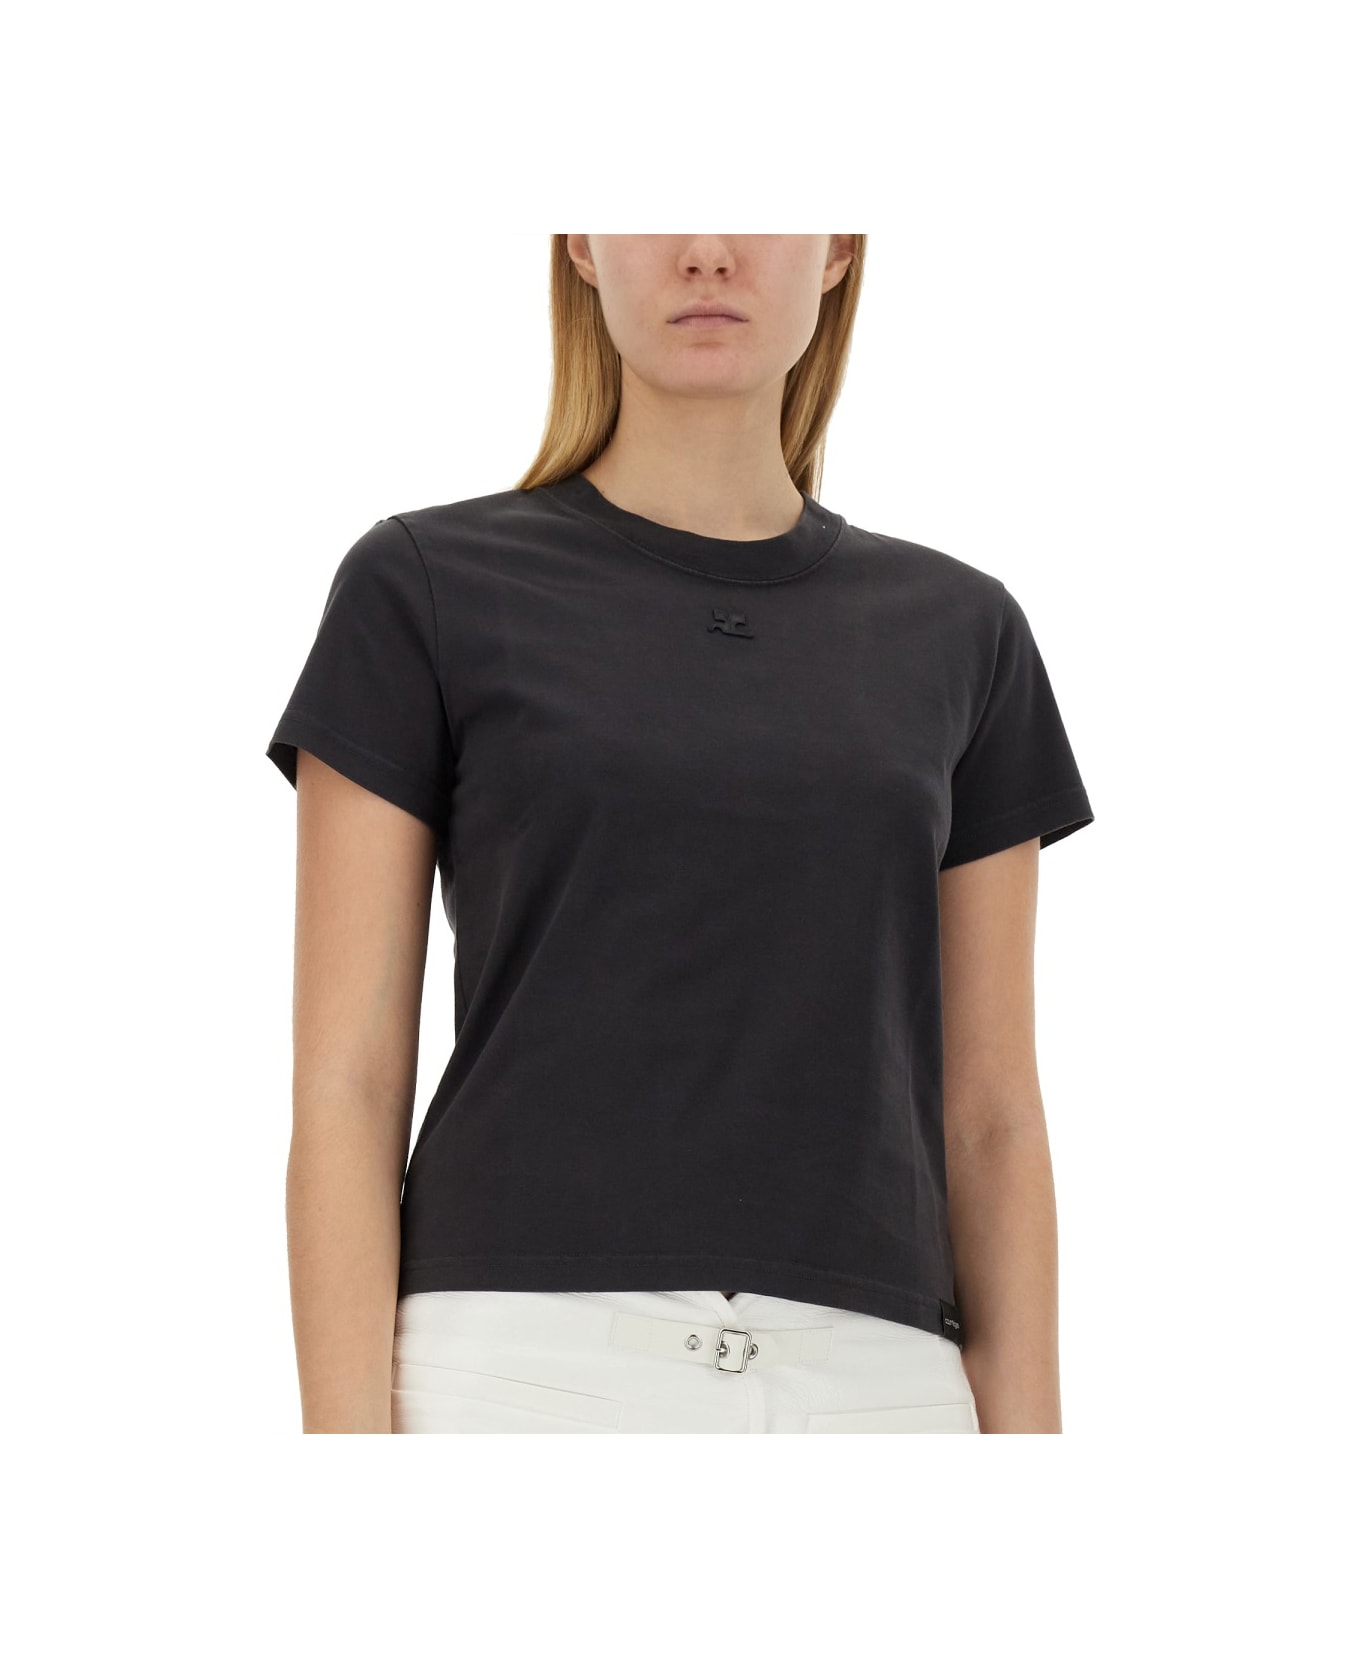 Courrèges T-shirt "ac" - GREY Tシャツ